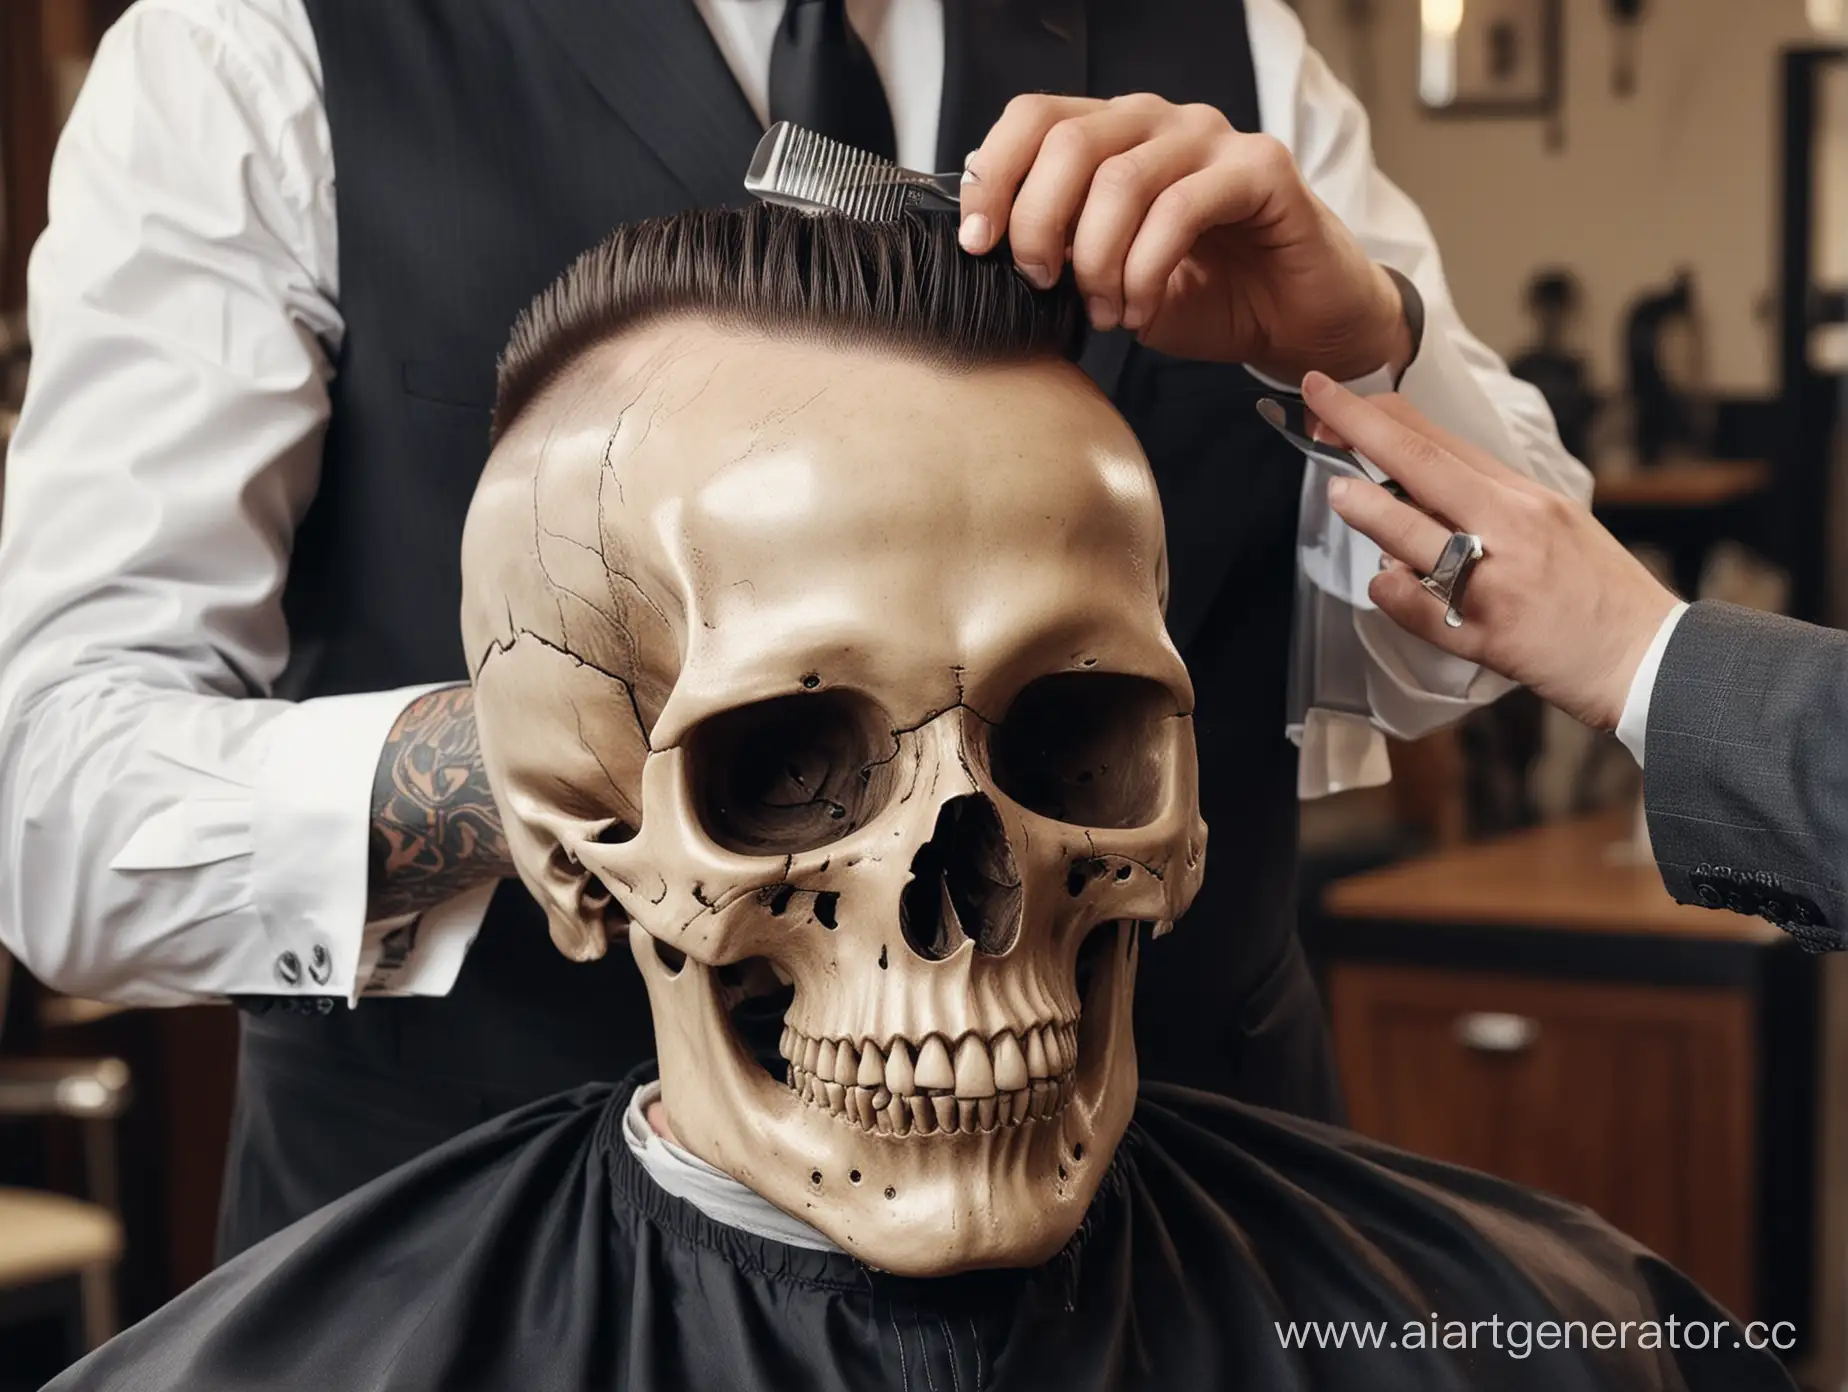 Skull-in-Suit-Getting-a-Haircut-Barbershop-Closeup